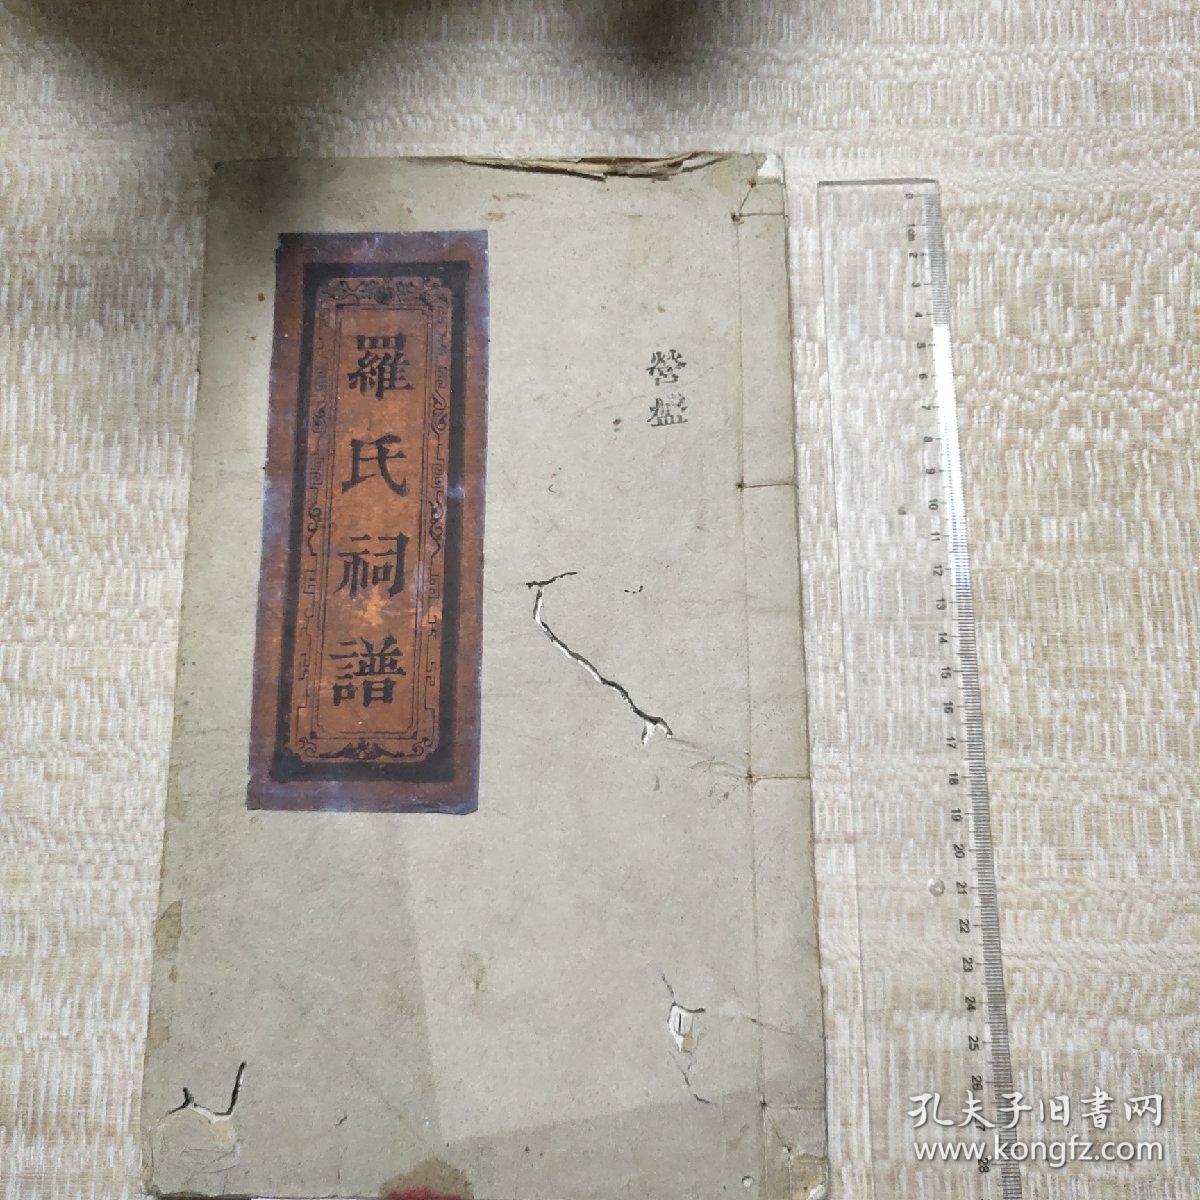 117_羅氏祠譜  二卷  清同治七年（1868年）豫章堂木活字本